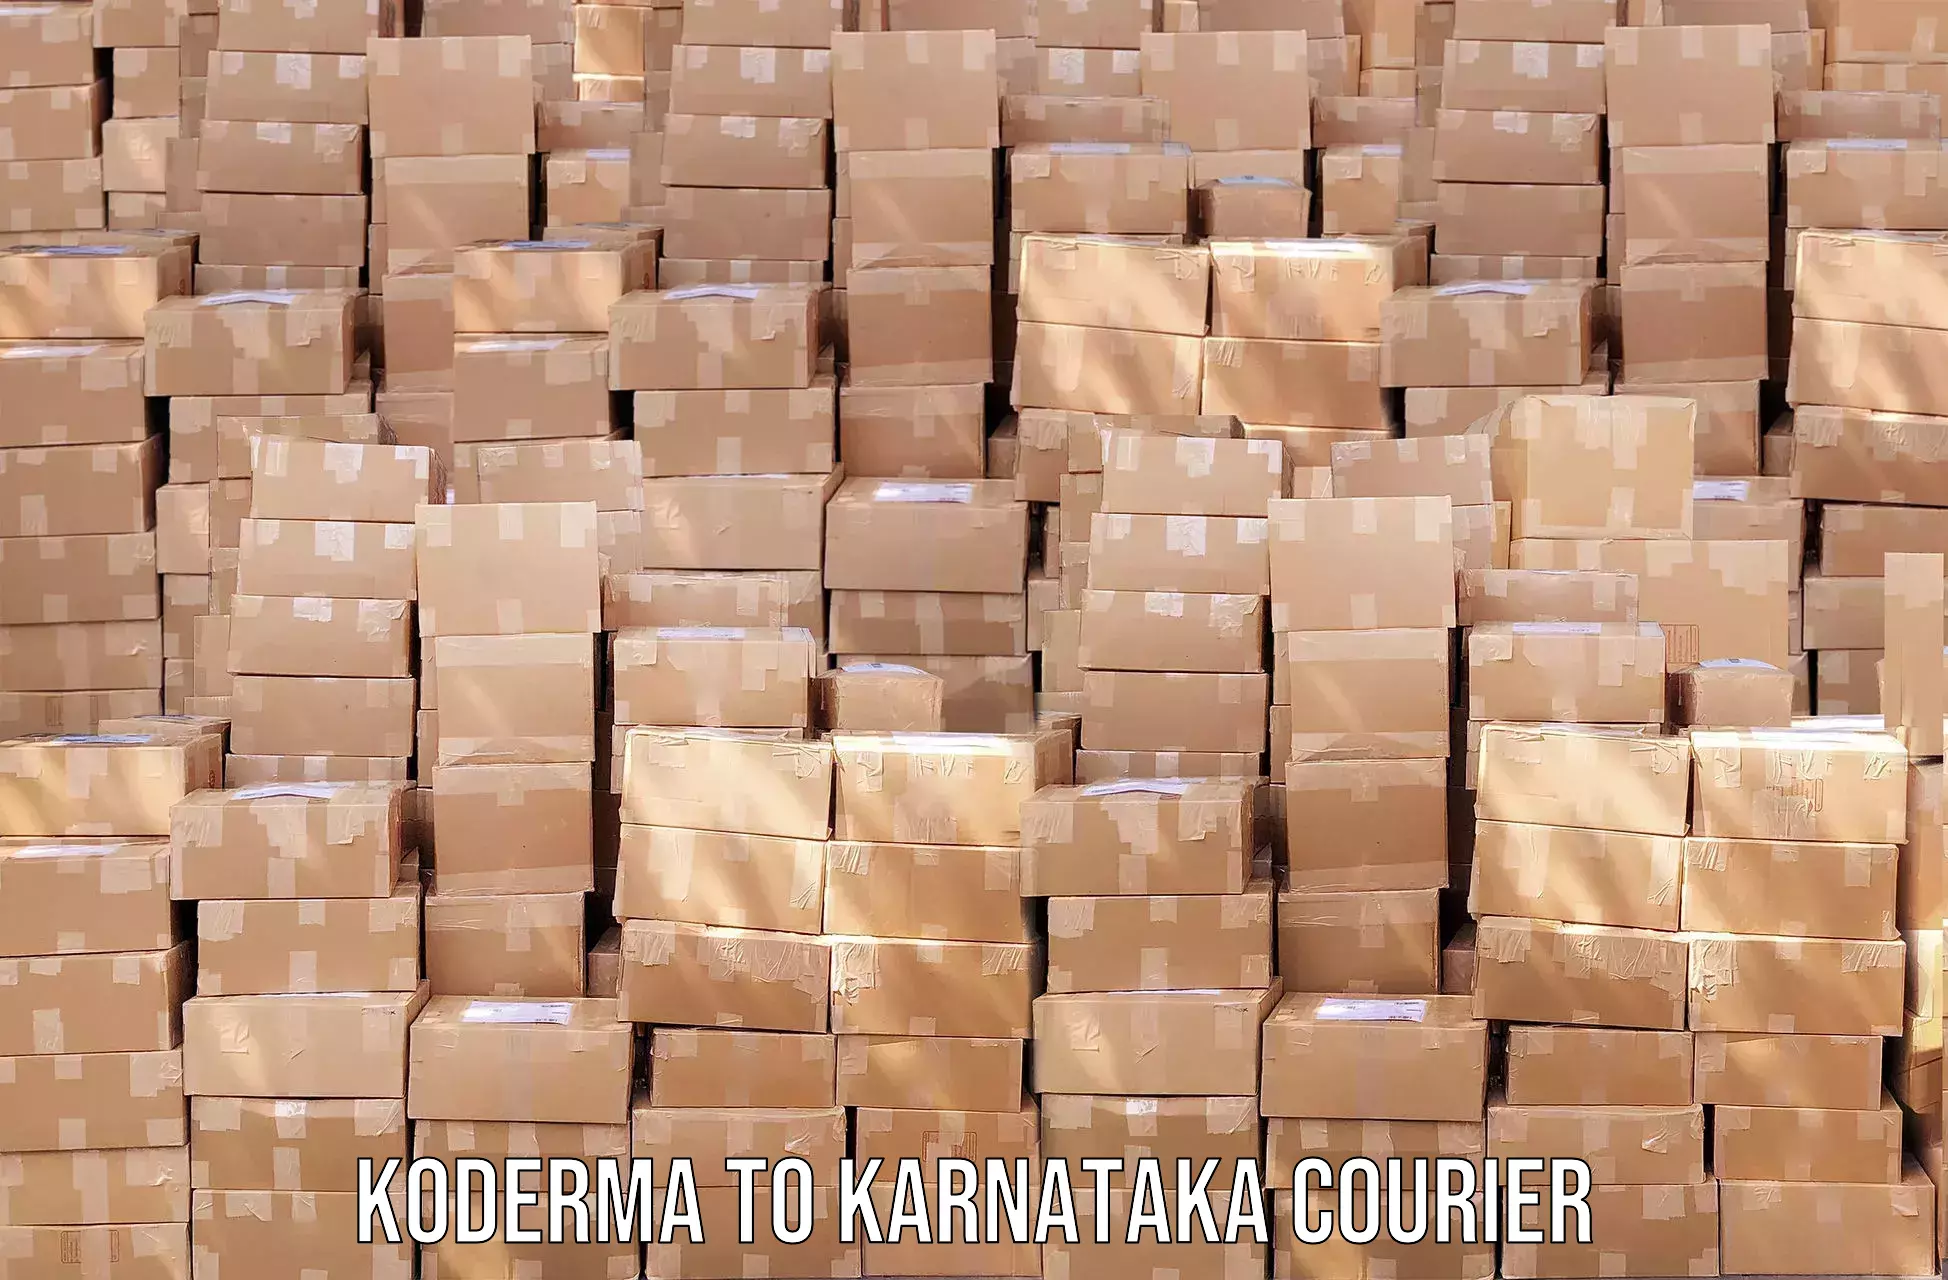 Speedy delivery service Koderma to Karnataka